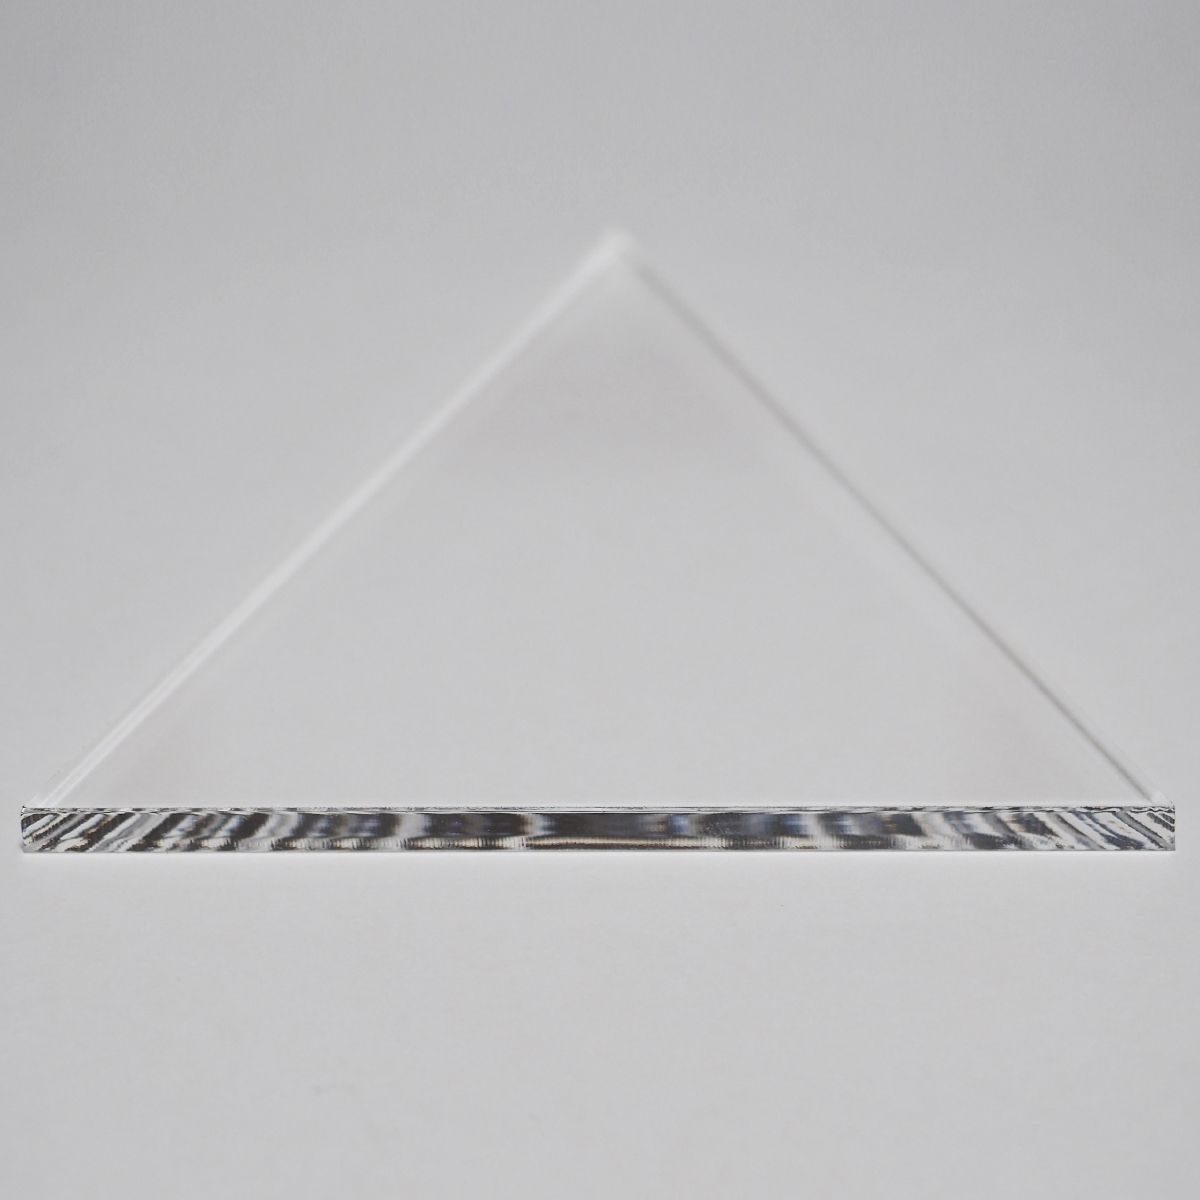 透明 アクリル 5mm厚 正三角形 1辺 10cm 10個セット - メルカリ